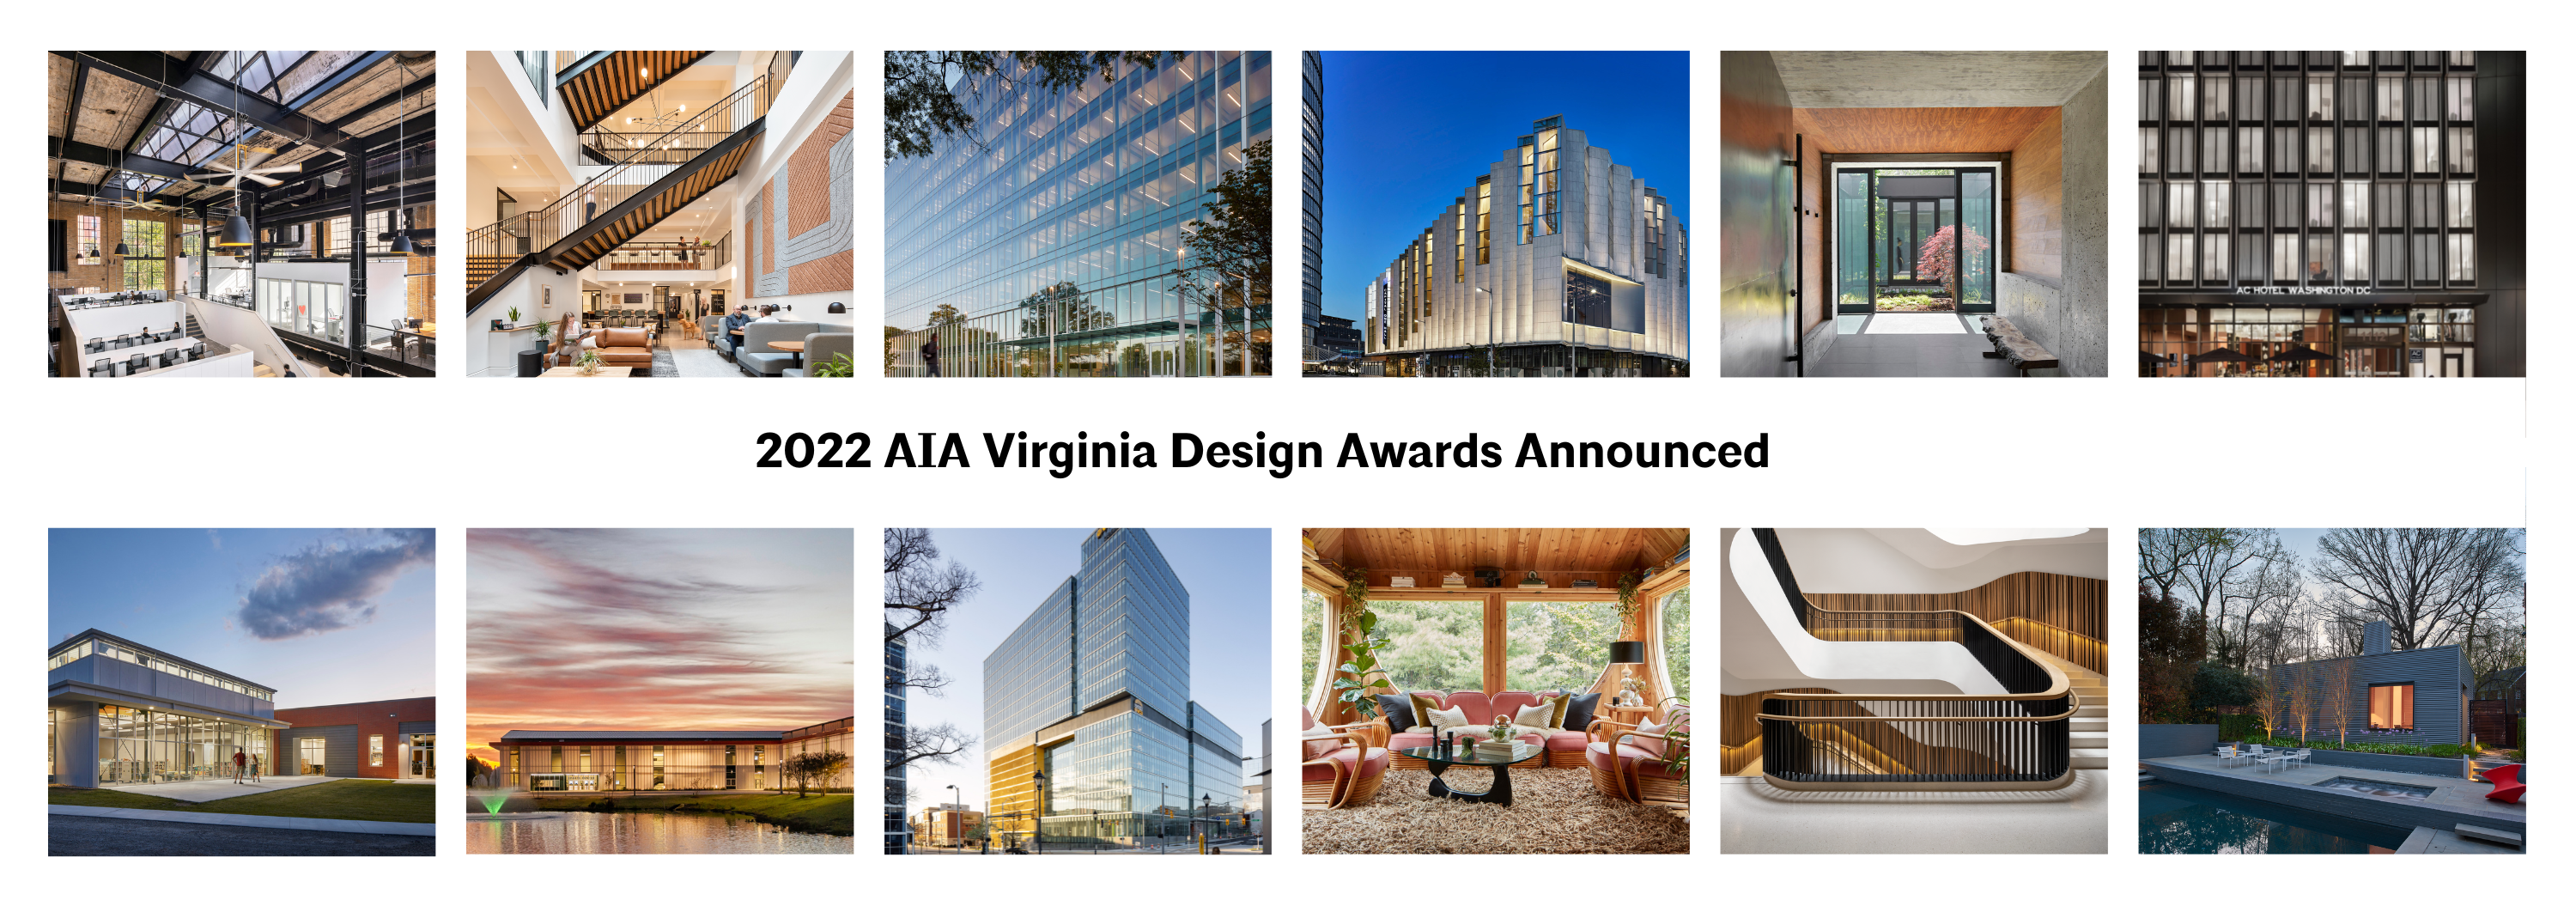 2022 Design Awards Announced